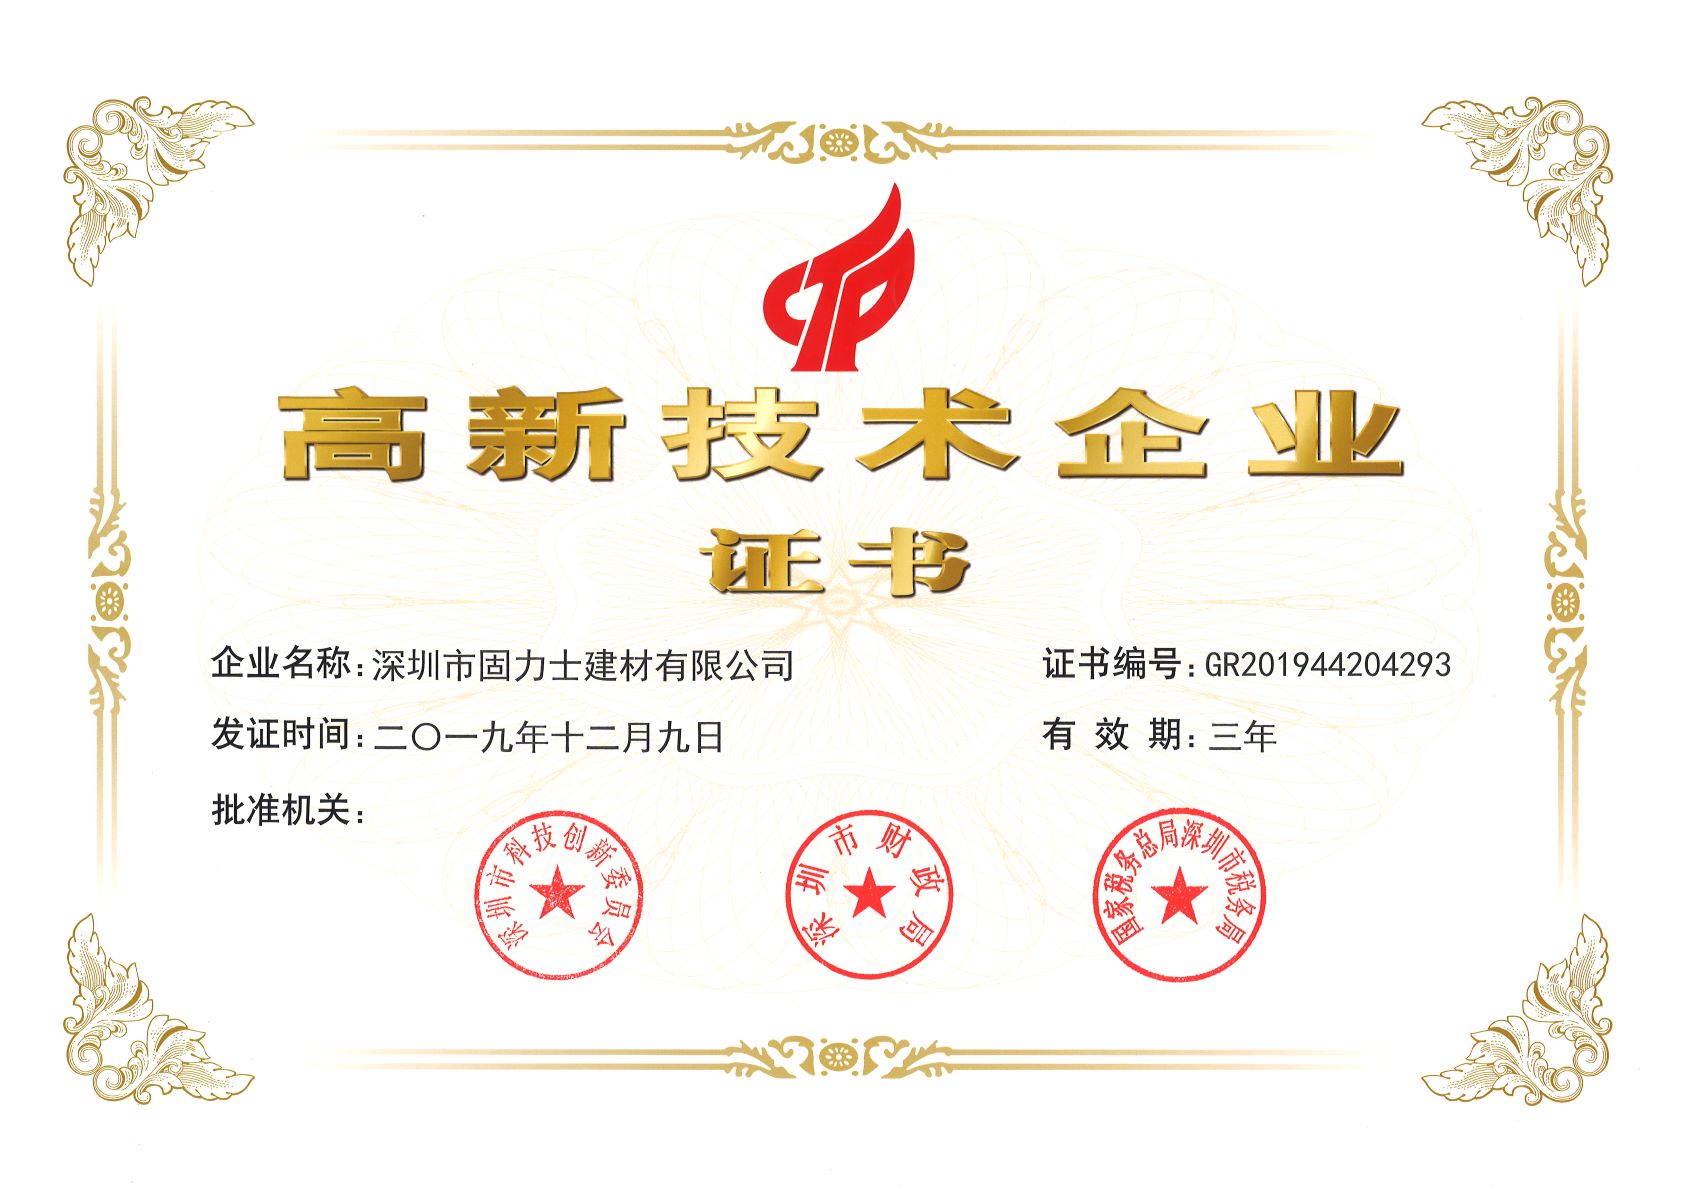 可克达拉热烈祝贺深圳市固力士建材有限公司通过高新技术企业认证